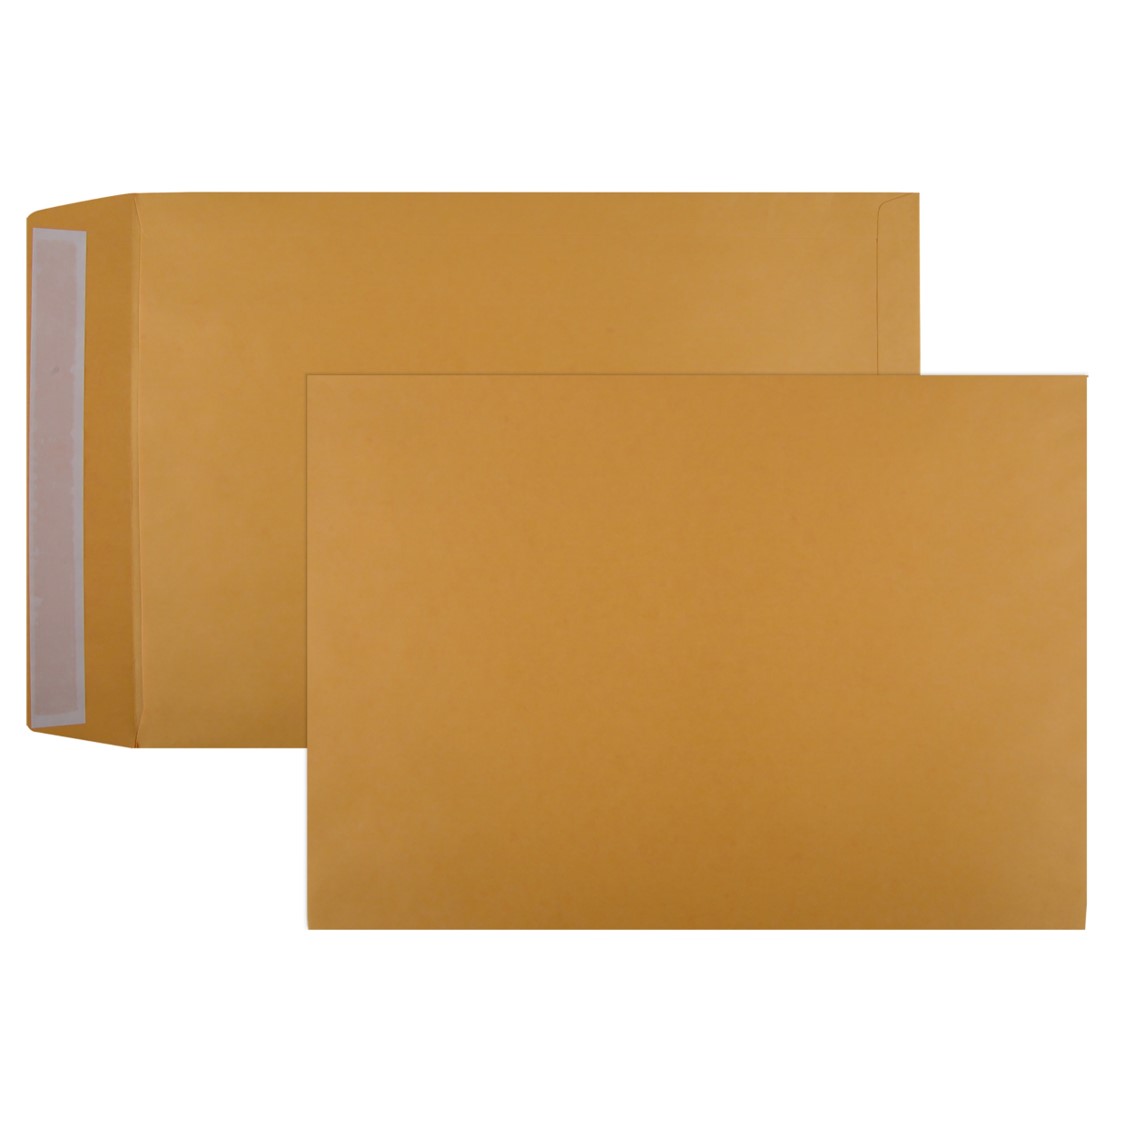 Envelope 30570 405x305 Gold Kraft Peel & Seal 105gsm Boxed 250